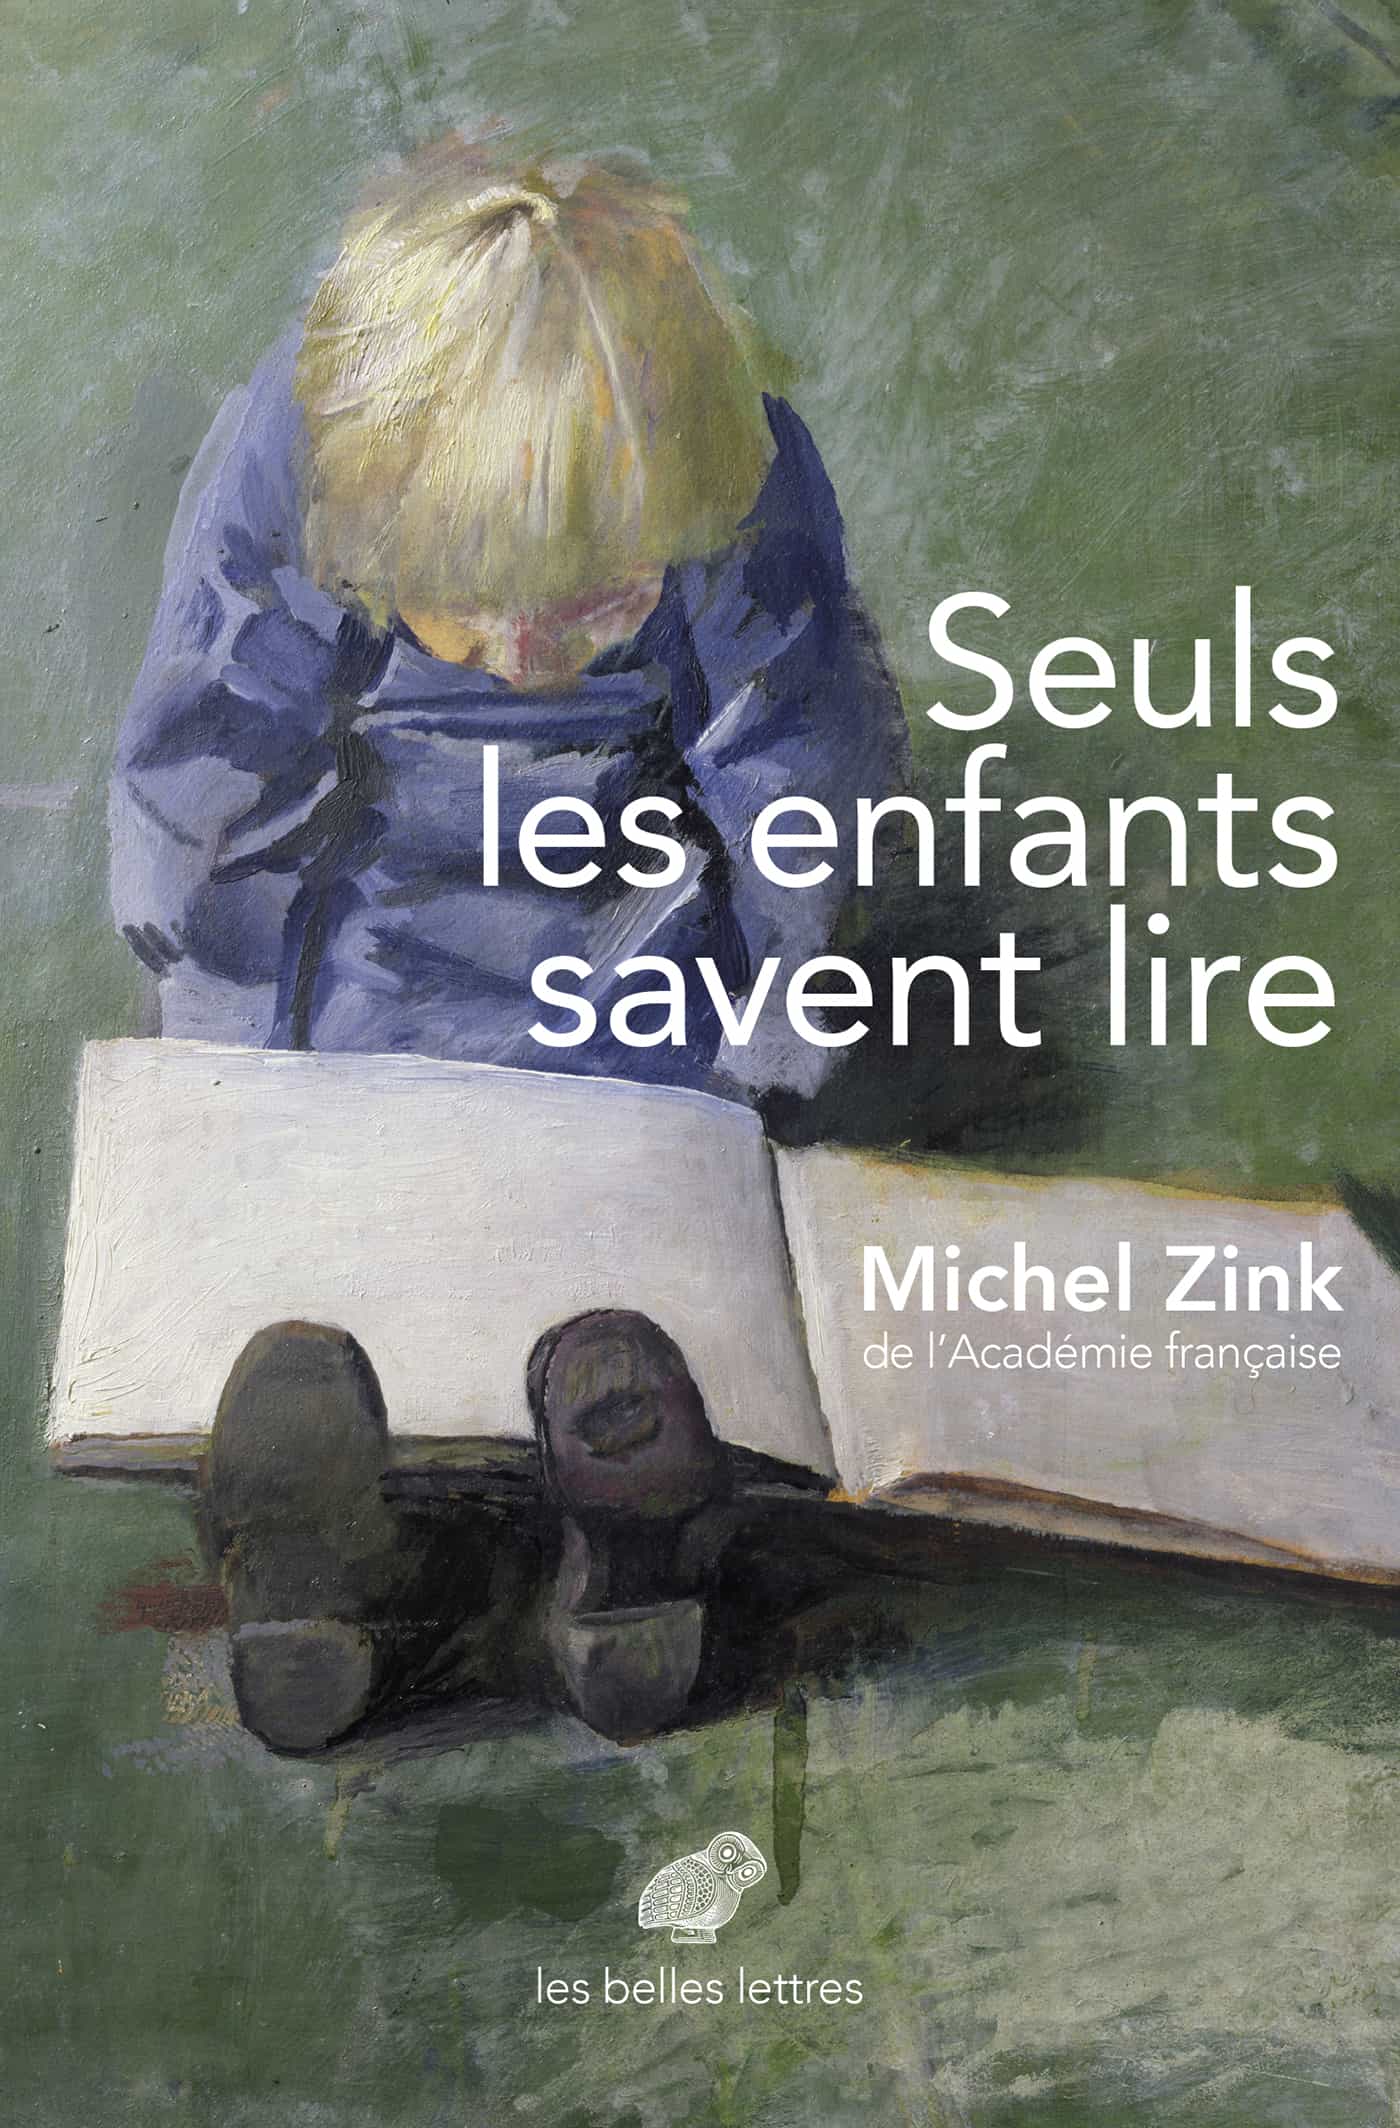 Seuls les enfants savent lire de Michel Zink 2019